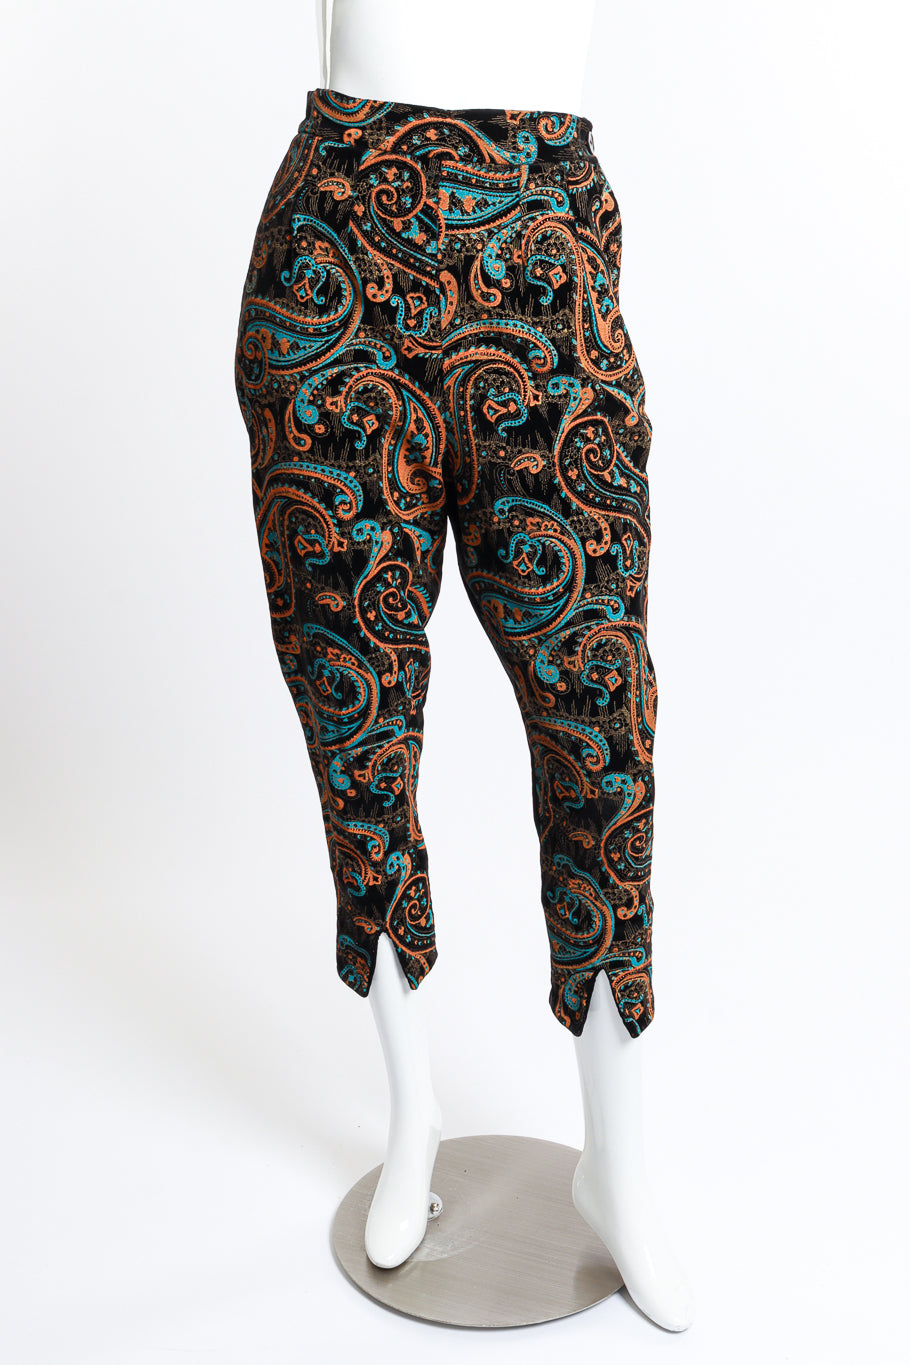 Paisley Pant Set by Dallas Sportswear pants on mannequin @RECESS LA